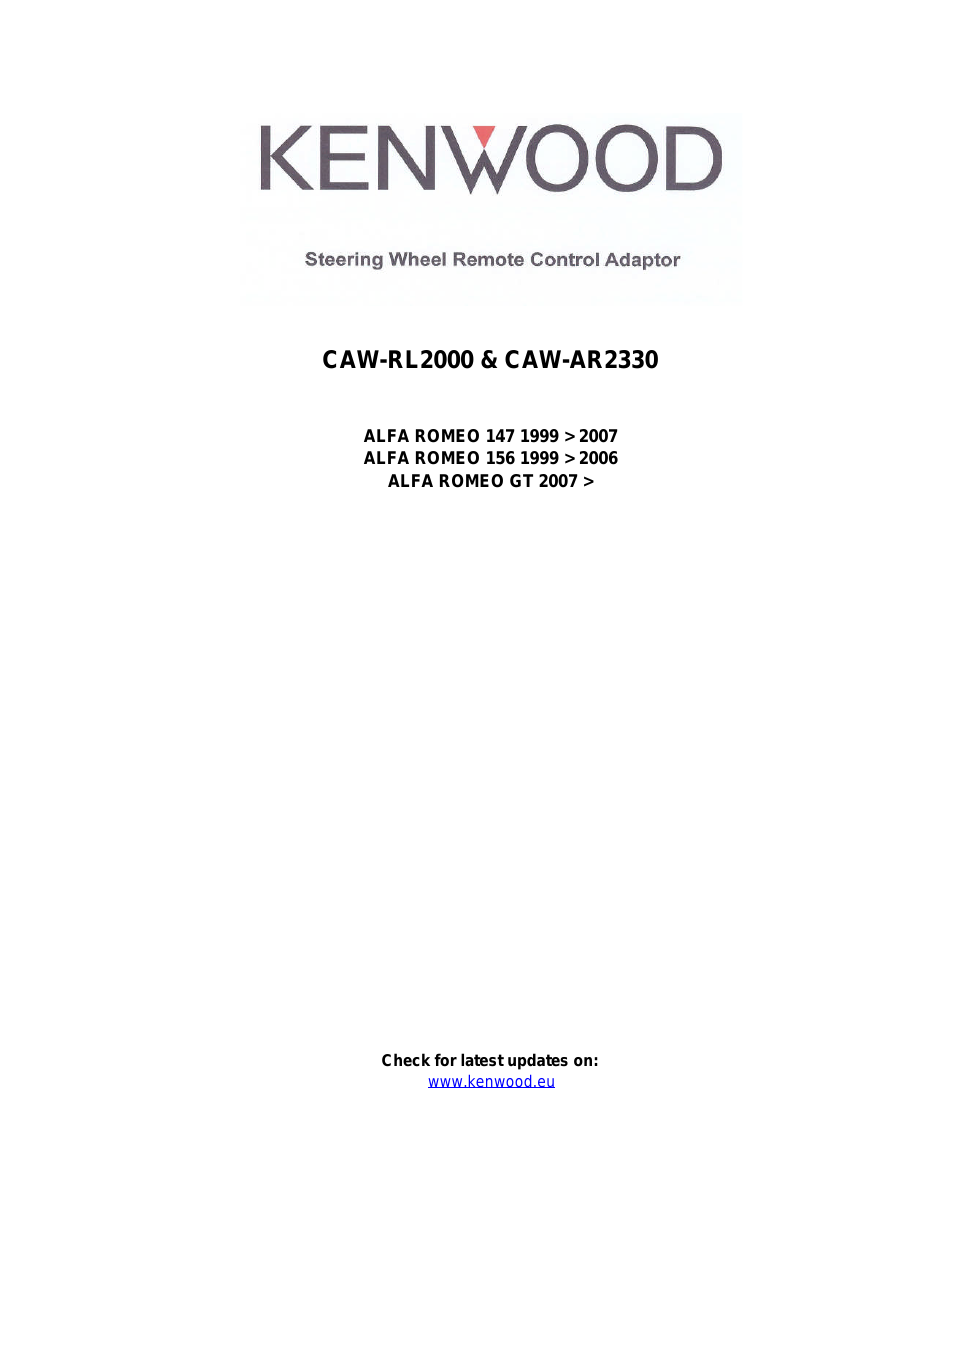 CAW-AR2330